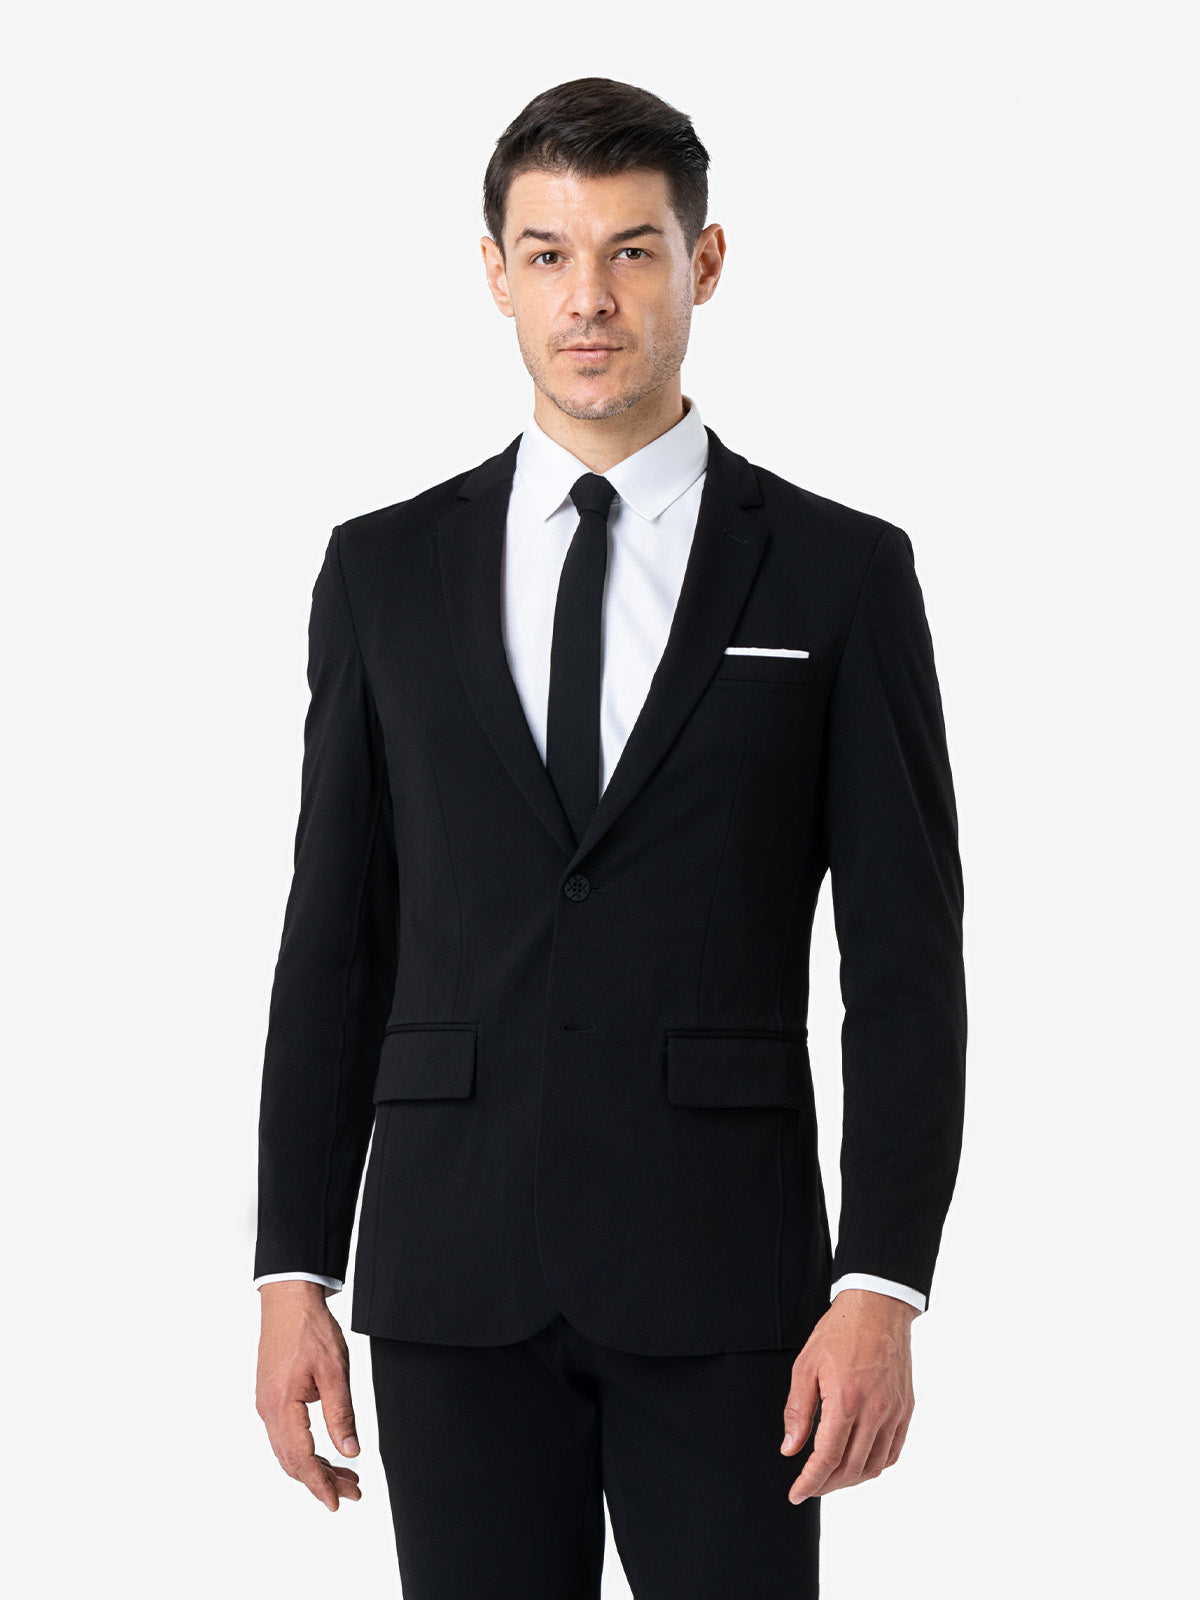 violento Cardenal Ostentoso xSuit 4.0 Black | Super Stretch & Machine Washable Men's Suit